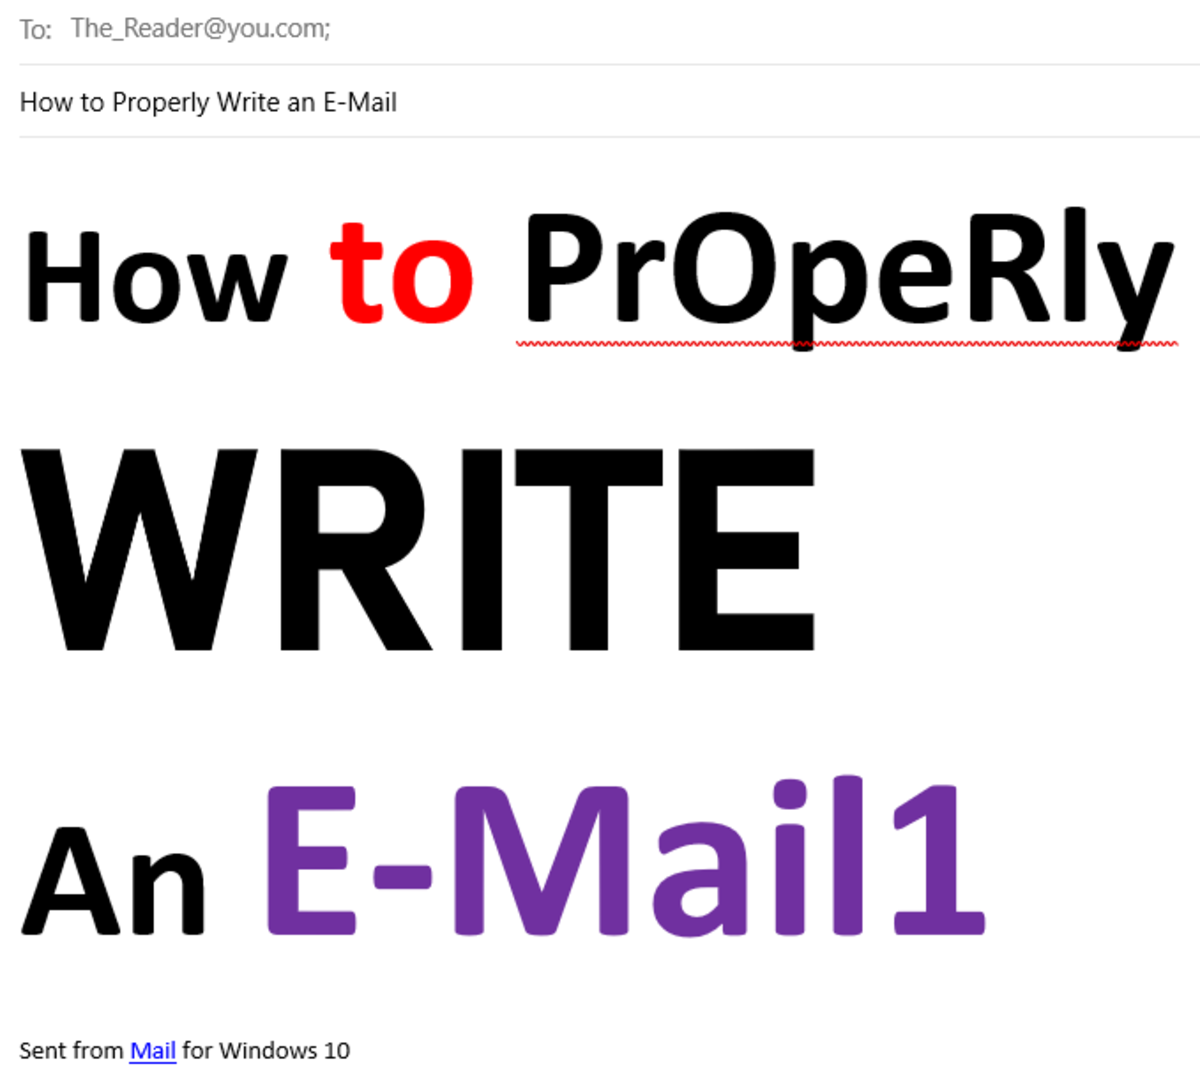 如果您发送这样的电子邮件，那么您需要学习如何正确地编写电子邮件。